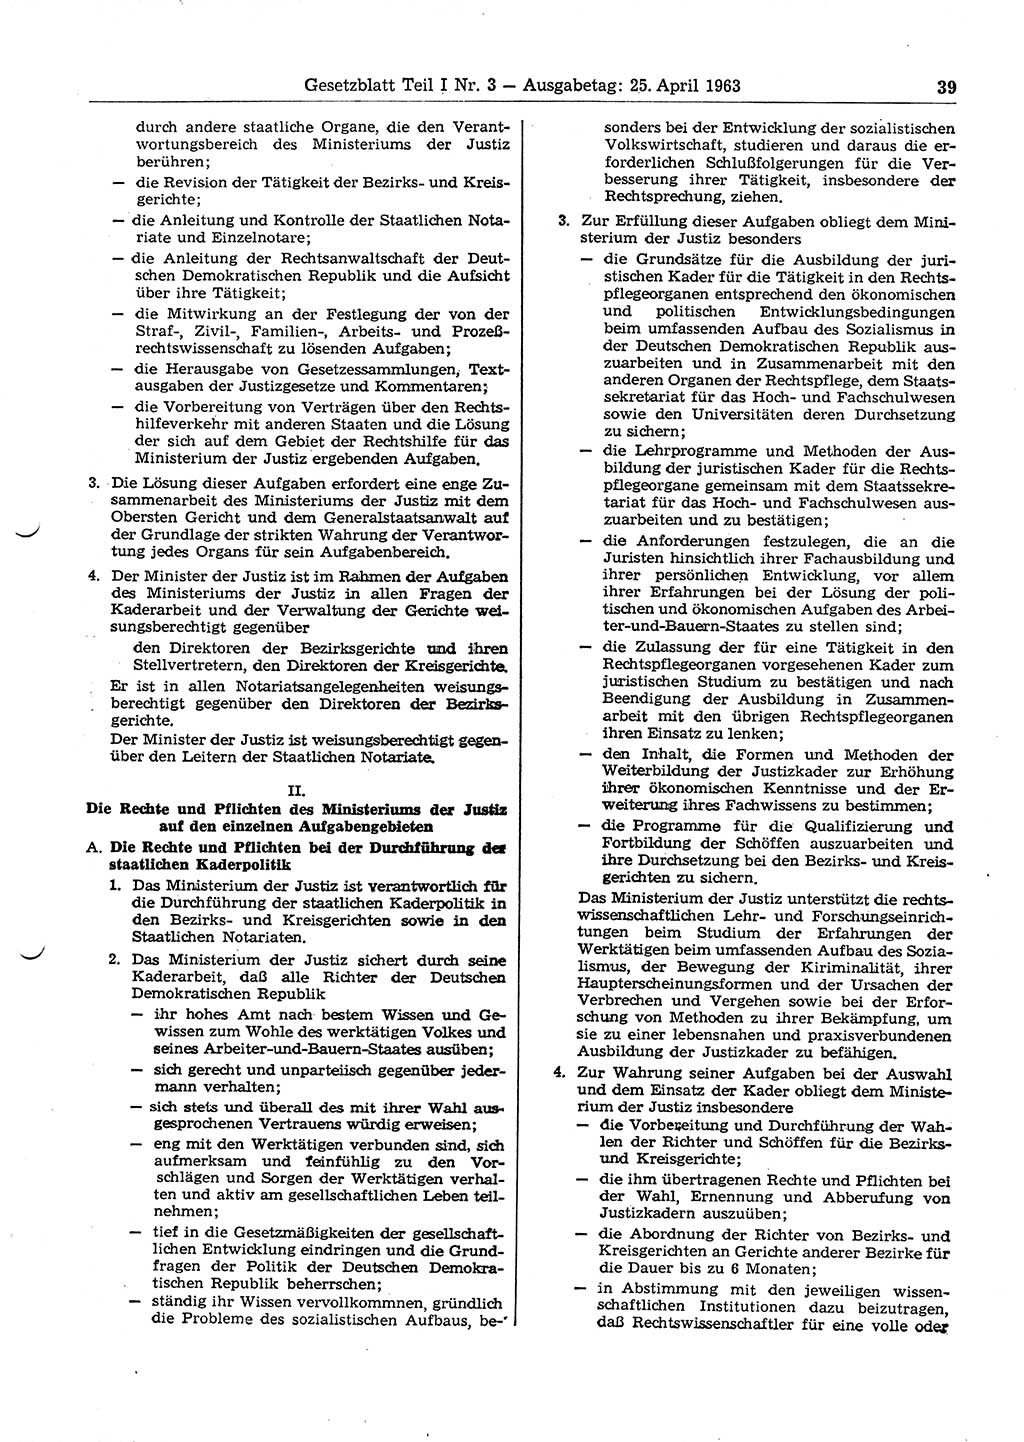 Gesetzblatt (GBl.) der Deutschen Demokratischen Republik (DDR) Teil Ⅰ 1963, Seite 39 (GBl. DDR Ⅰ 1963, S. 39)